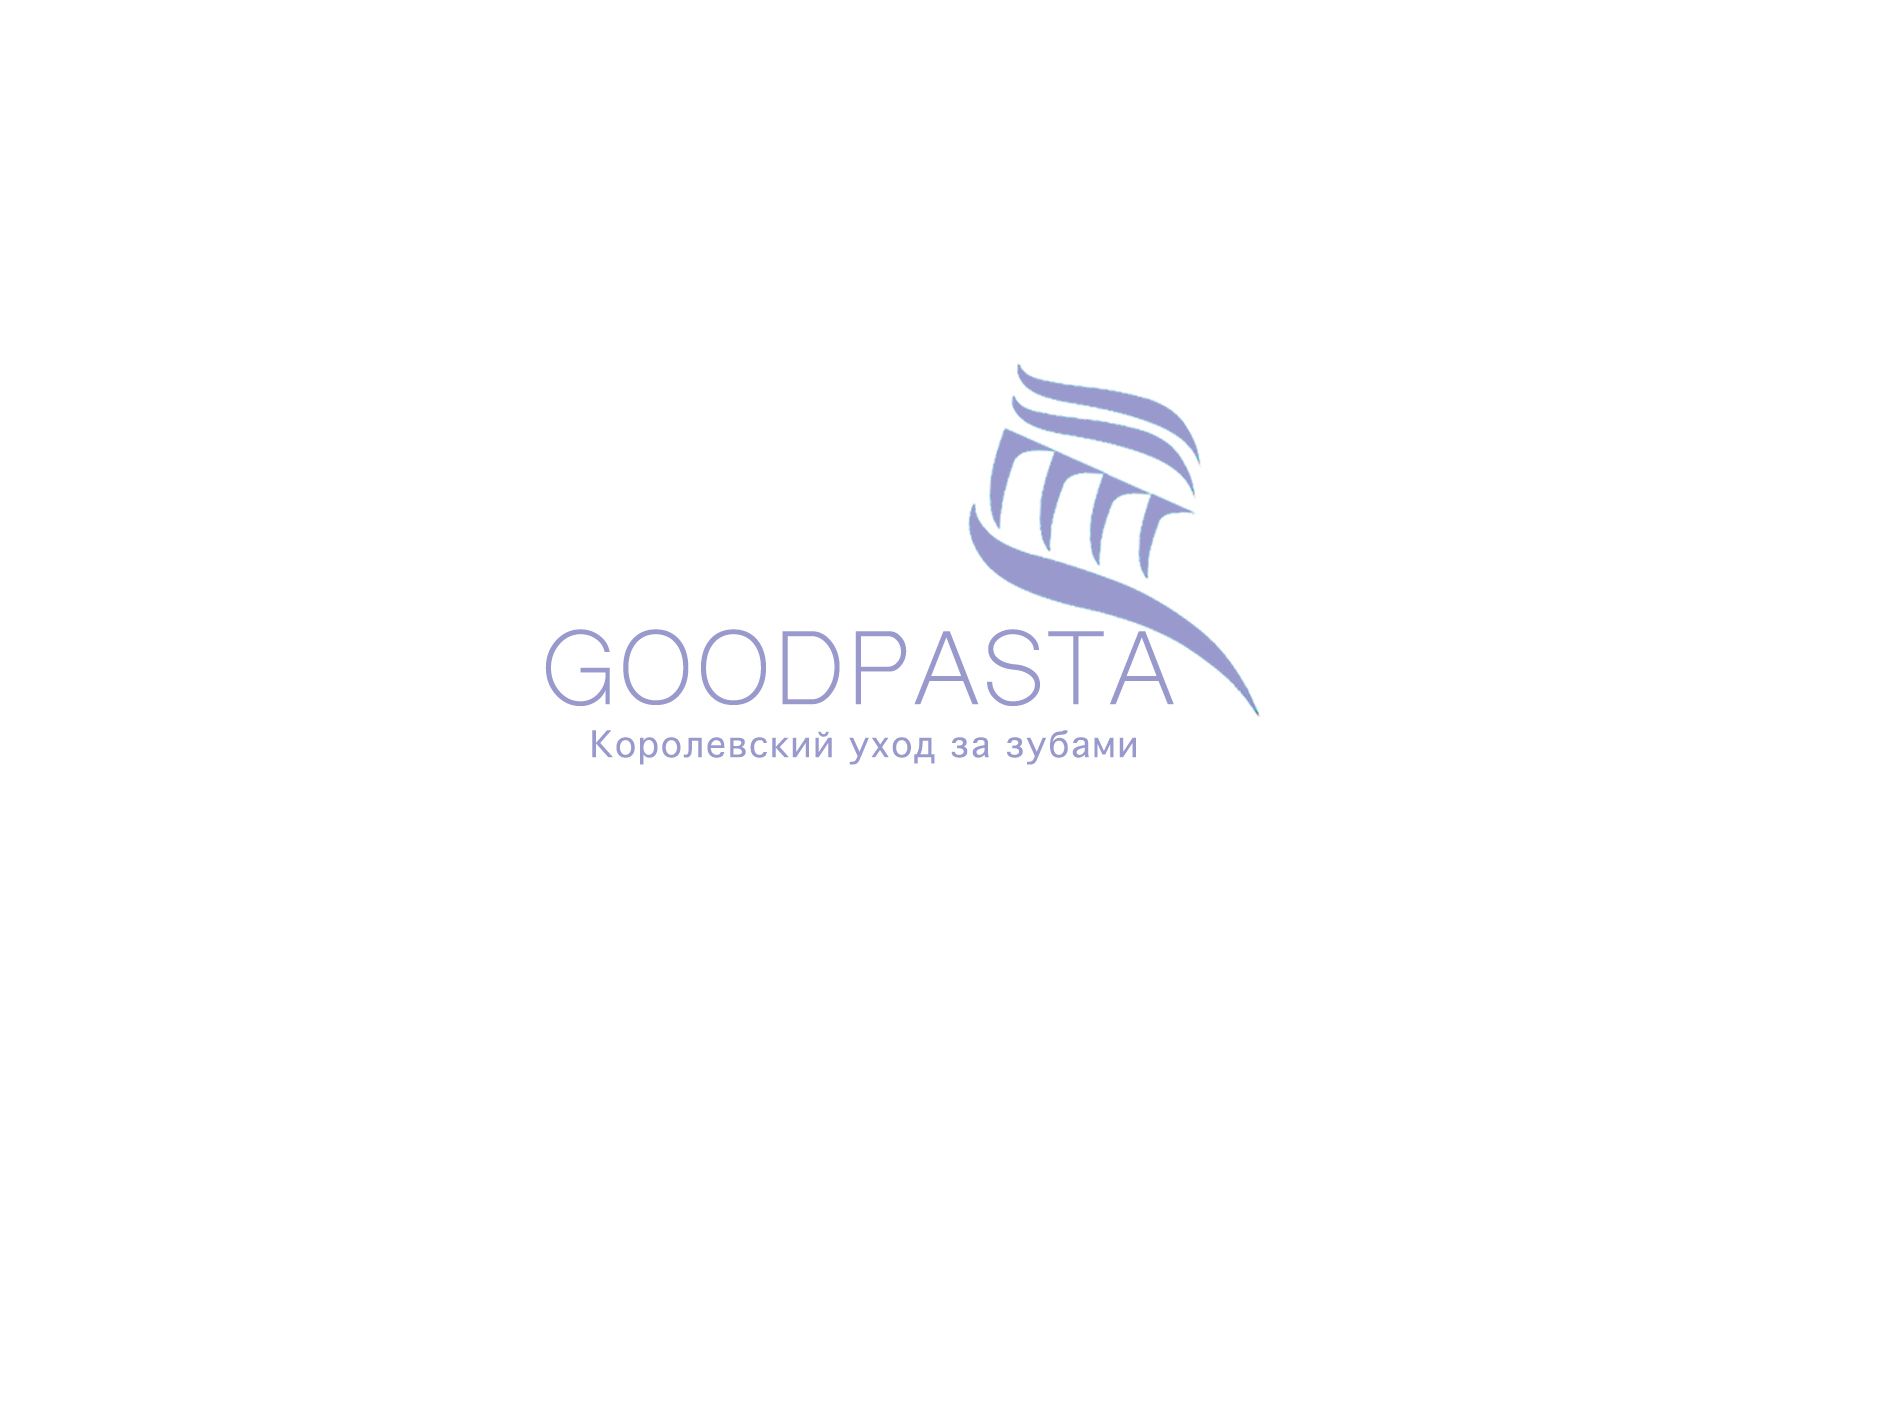 Логотип для интернет-магазина goodpasta.ru - дизайнер pirat67